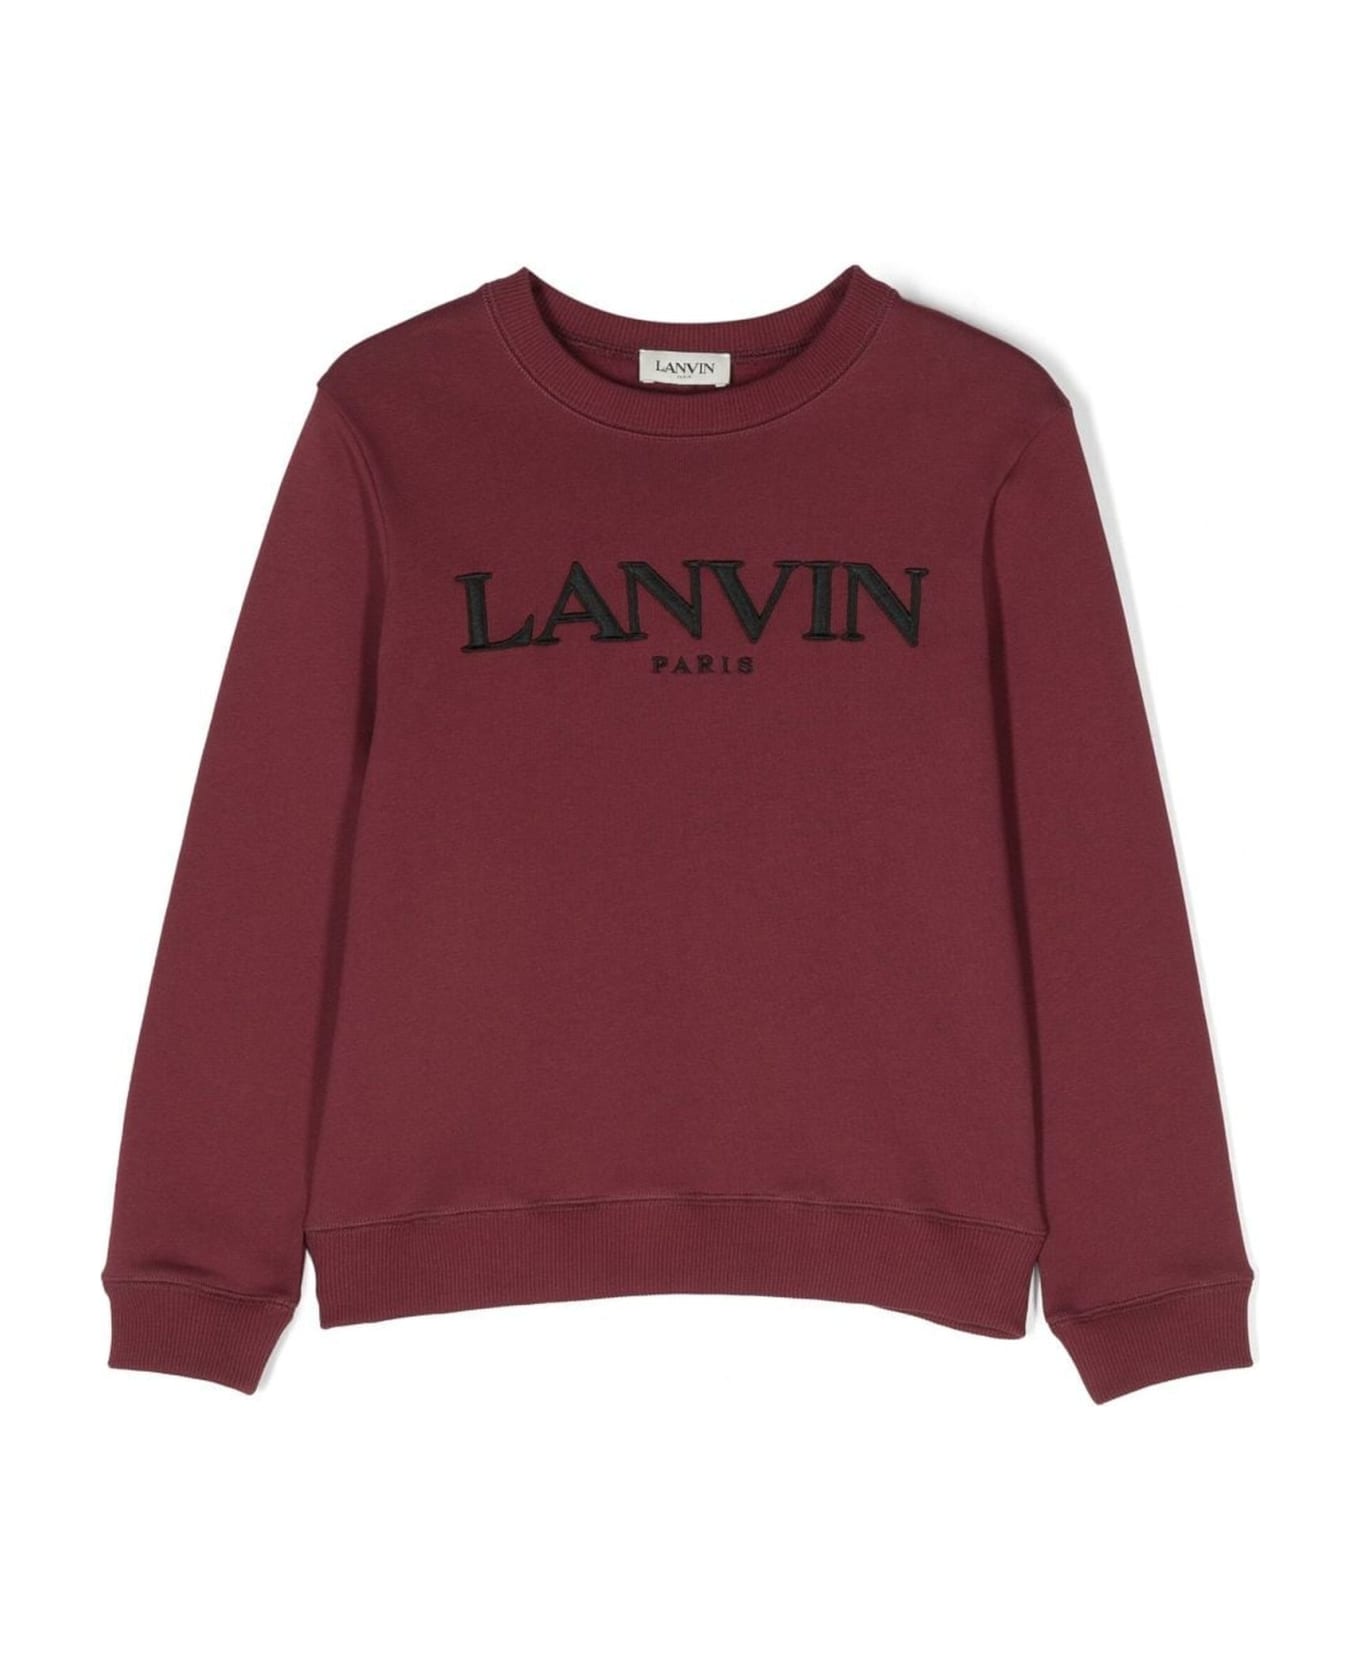 Lanvin Bordeaux Red Cotton Sweatshirt - A Bordeaux